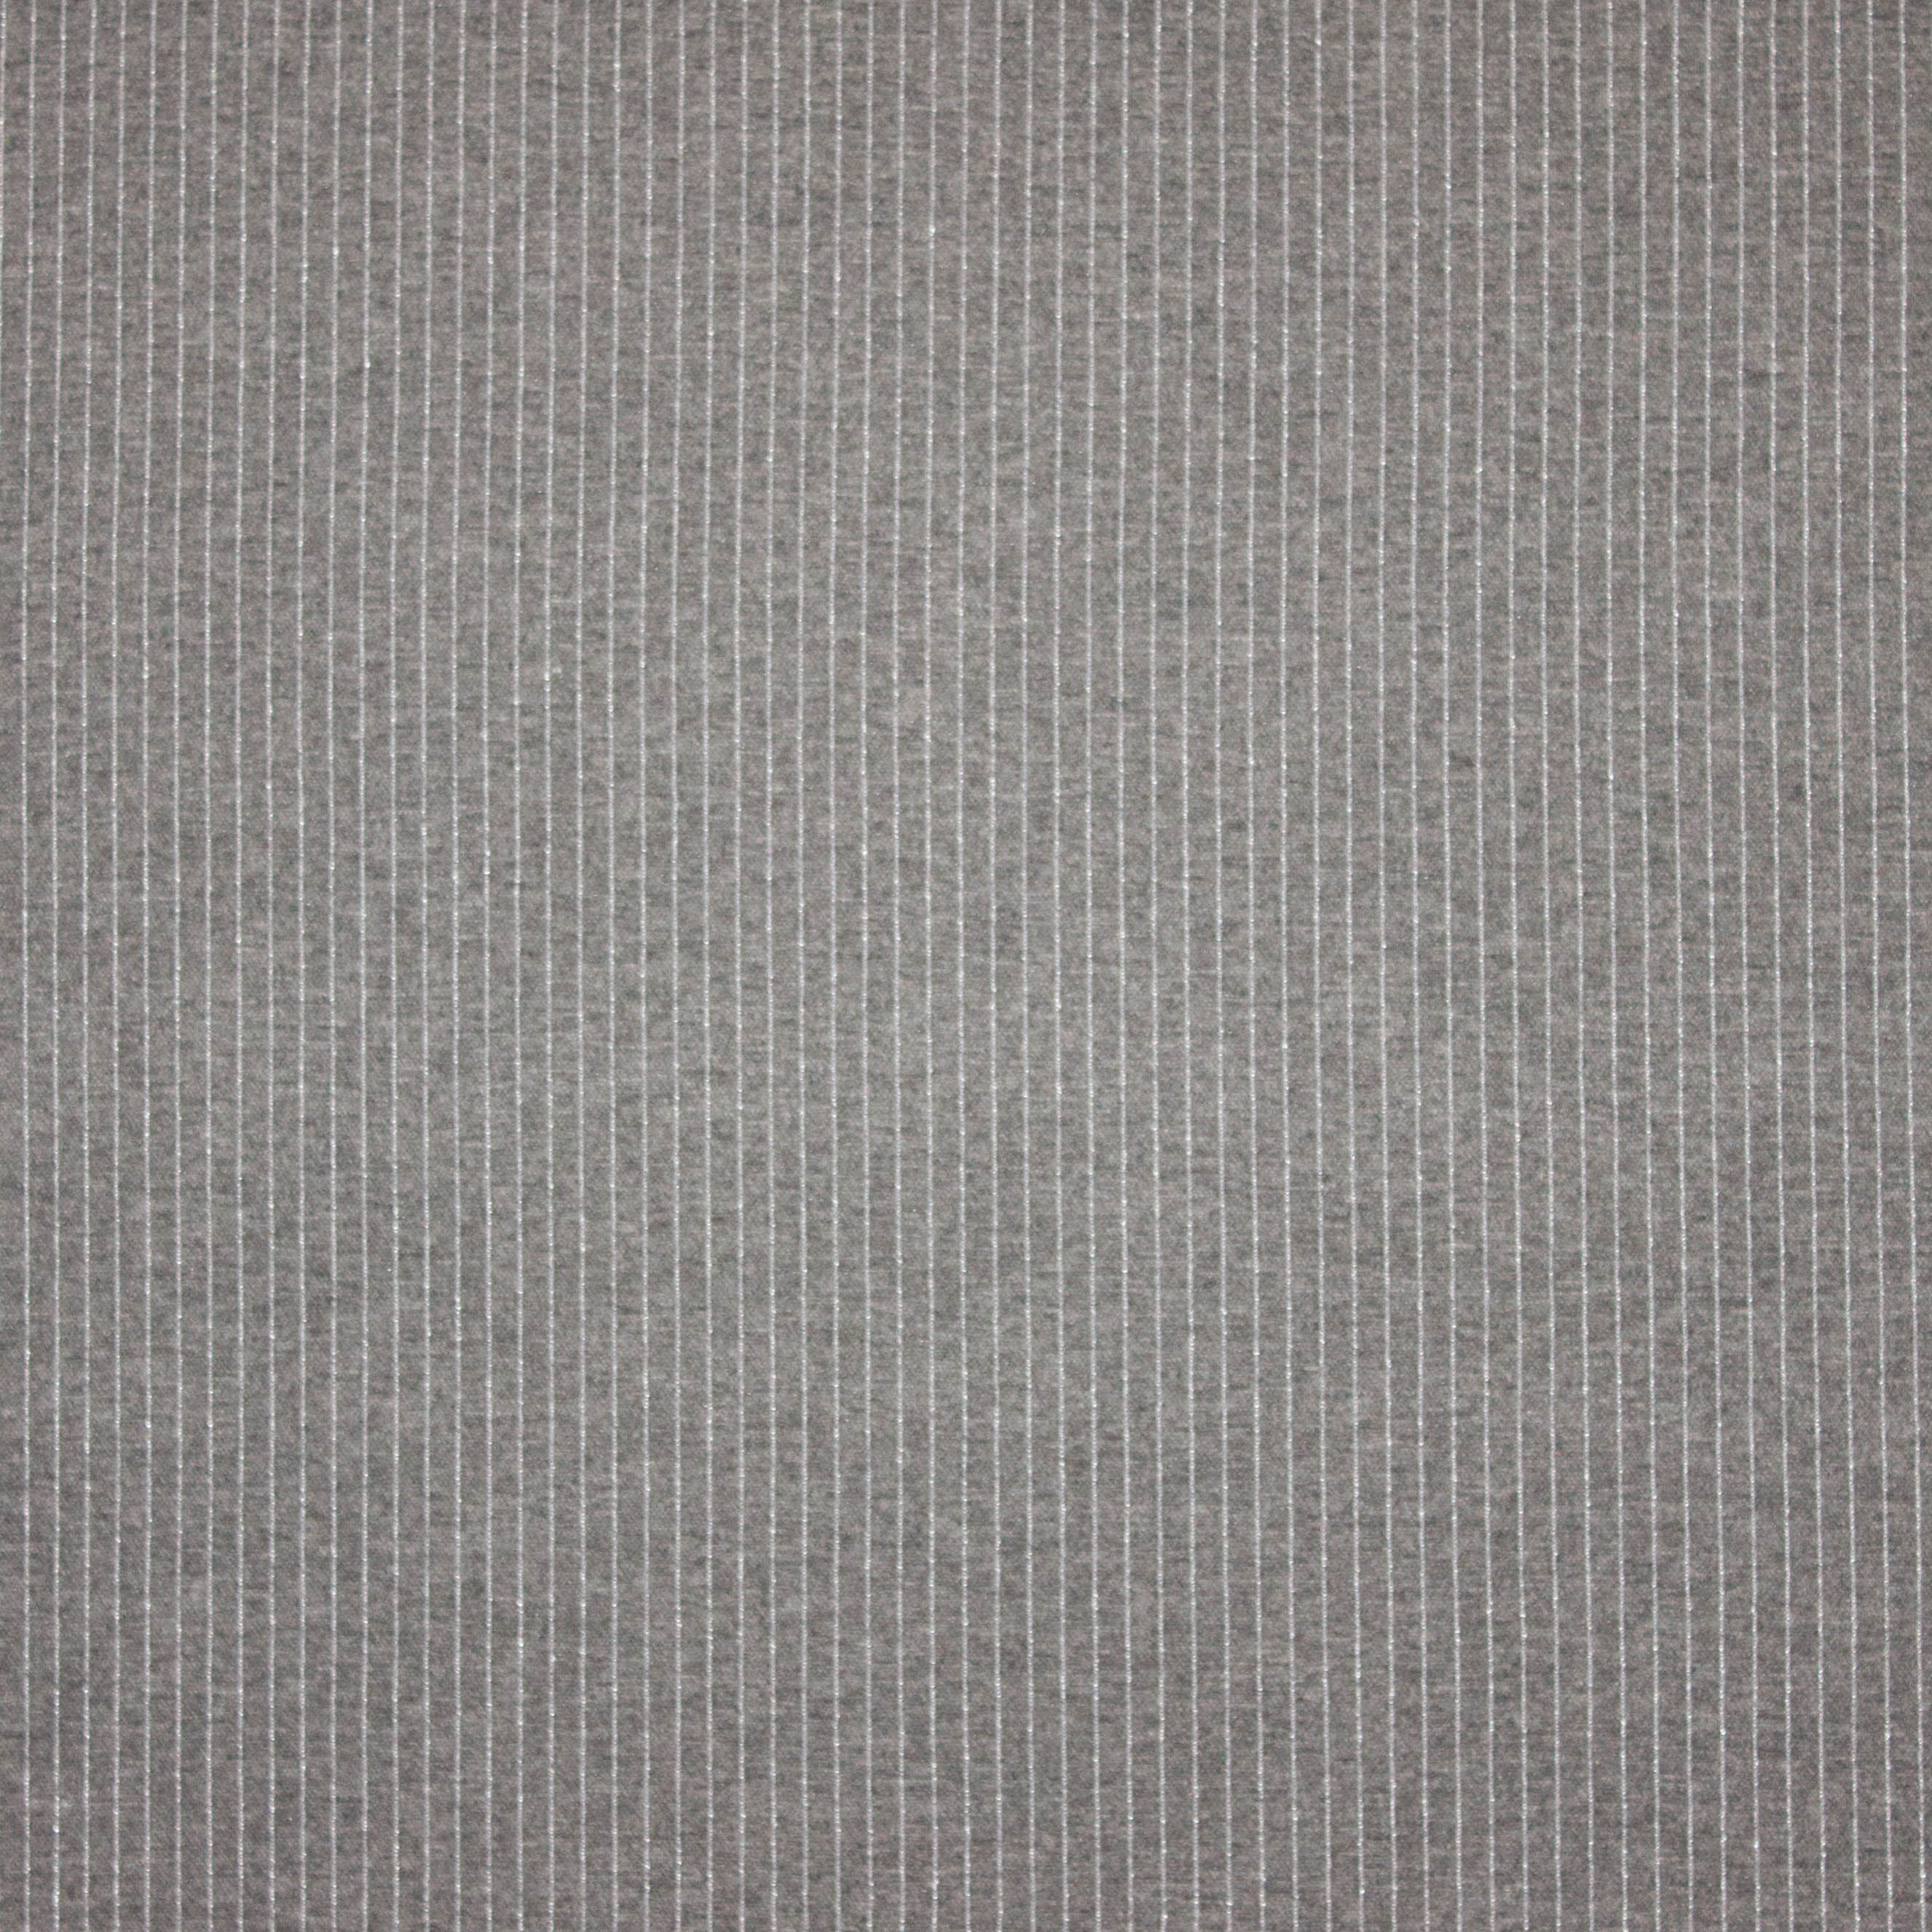 Grijze tricot met zilveren glitter streepjes